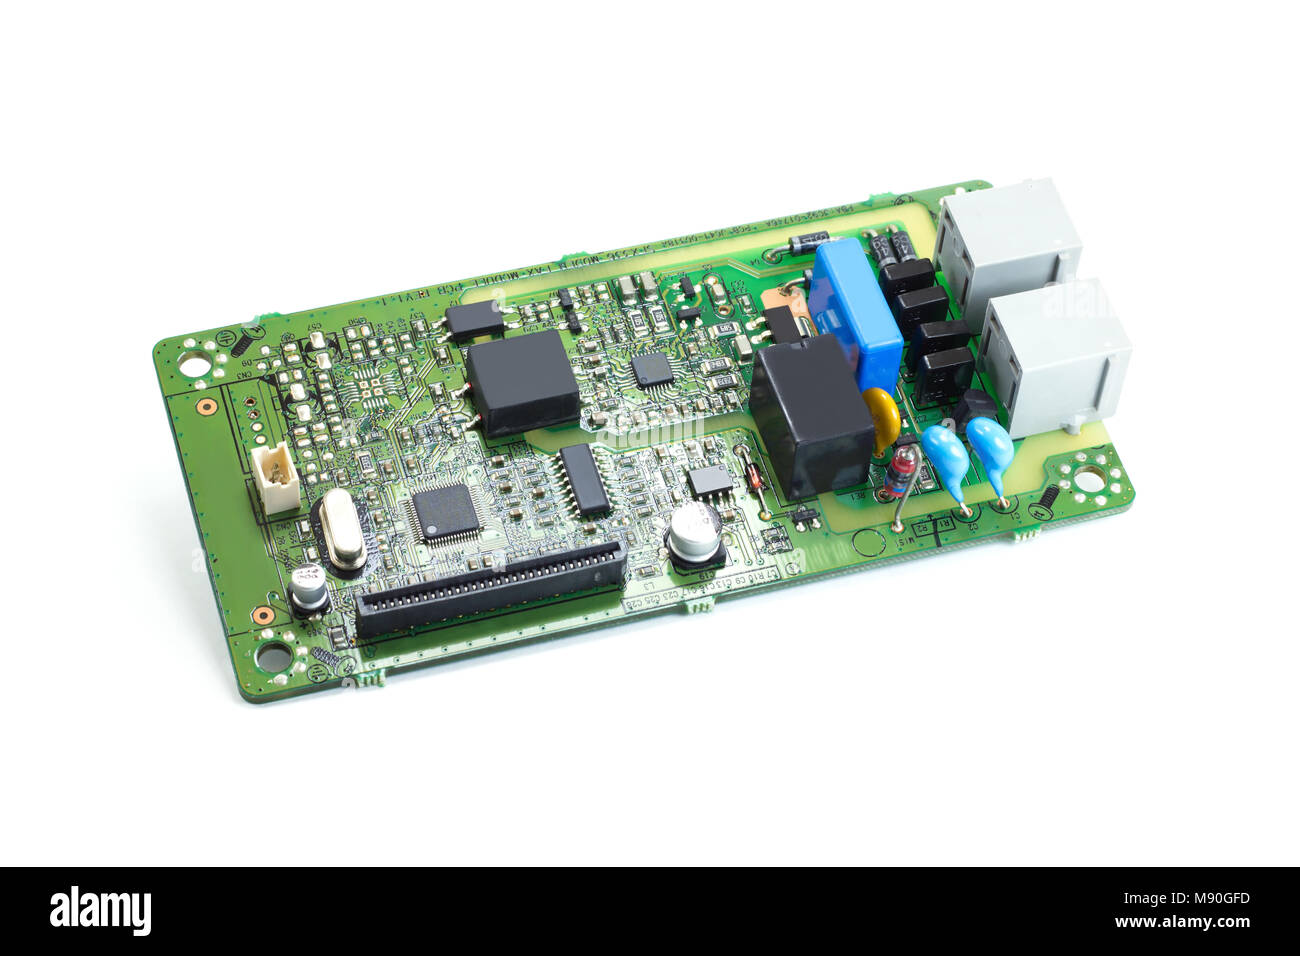 Elektronikplatine Printed Circuit Board FAX Stockfoto